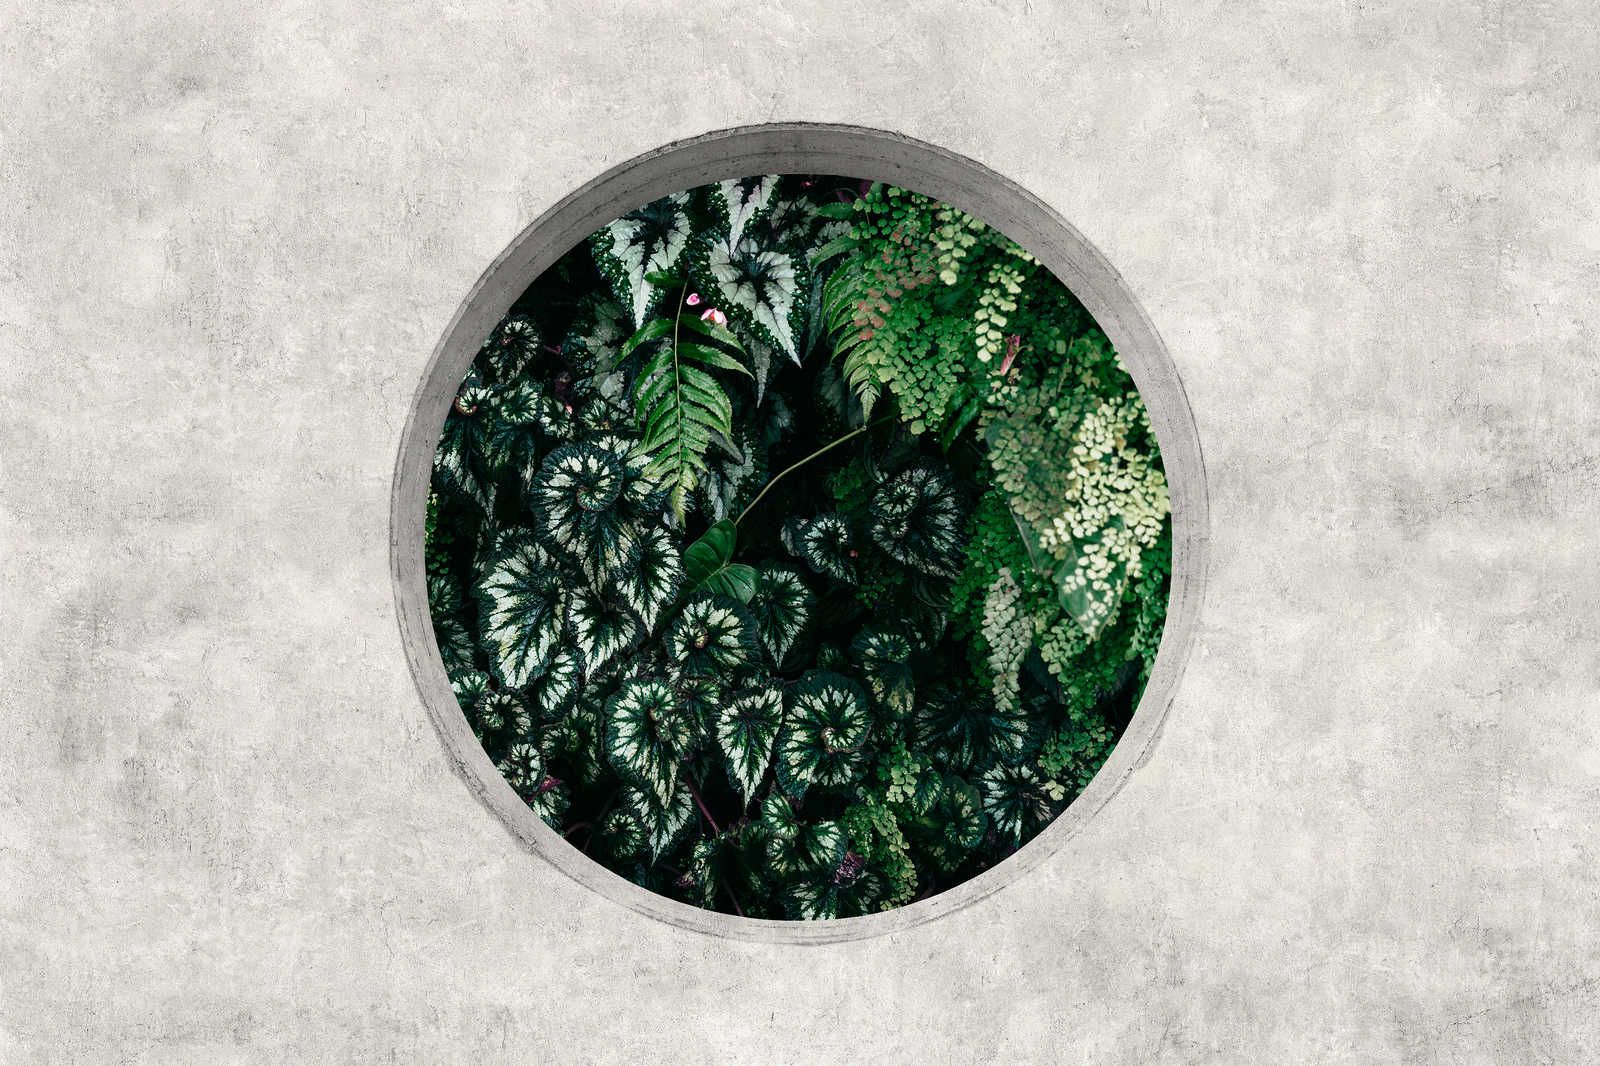             Deep Green 1 - Toile Fenêtre Ronde avec Plantes de la Jungle - 0,90 m x 0,60 m
        